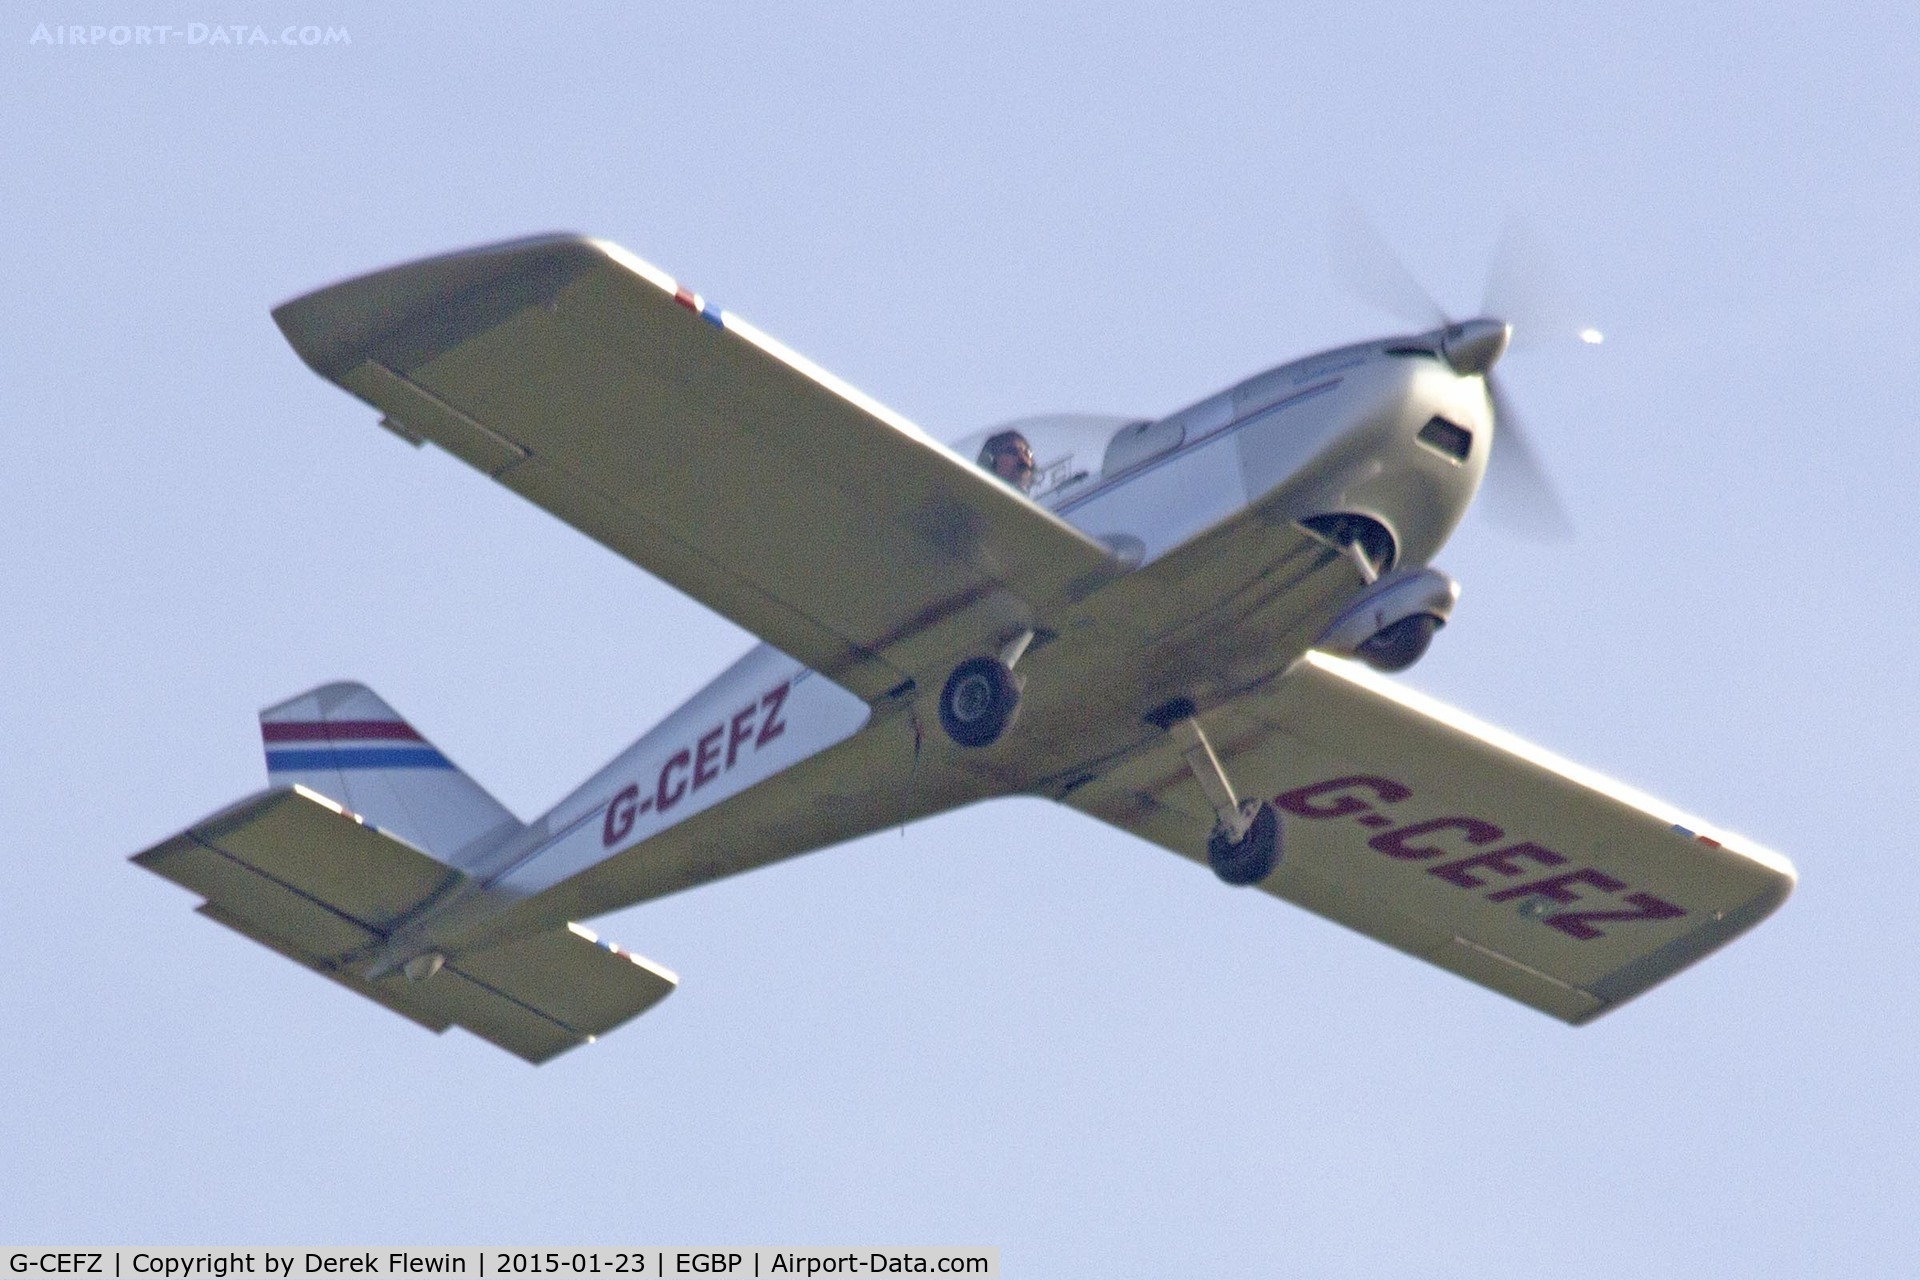 G-CEFZ, 2006 Cosmik EV-97 TeamEurostar UK C/N 2824, Eurostar, EGBP resident, seen departing runway 26 at EGBP.